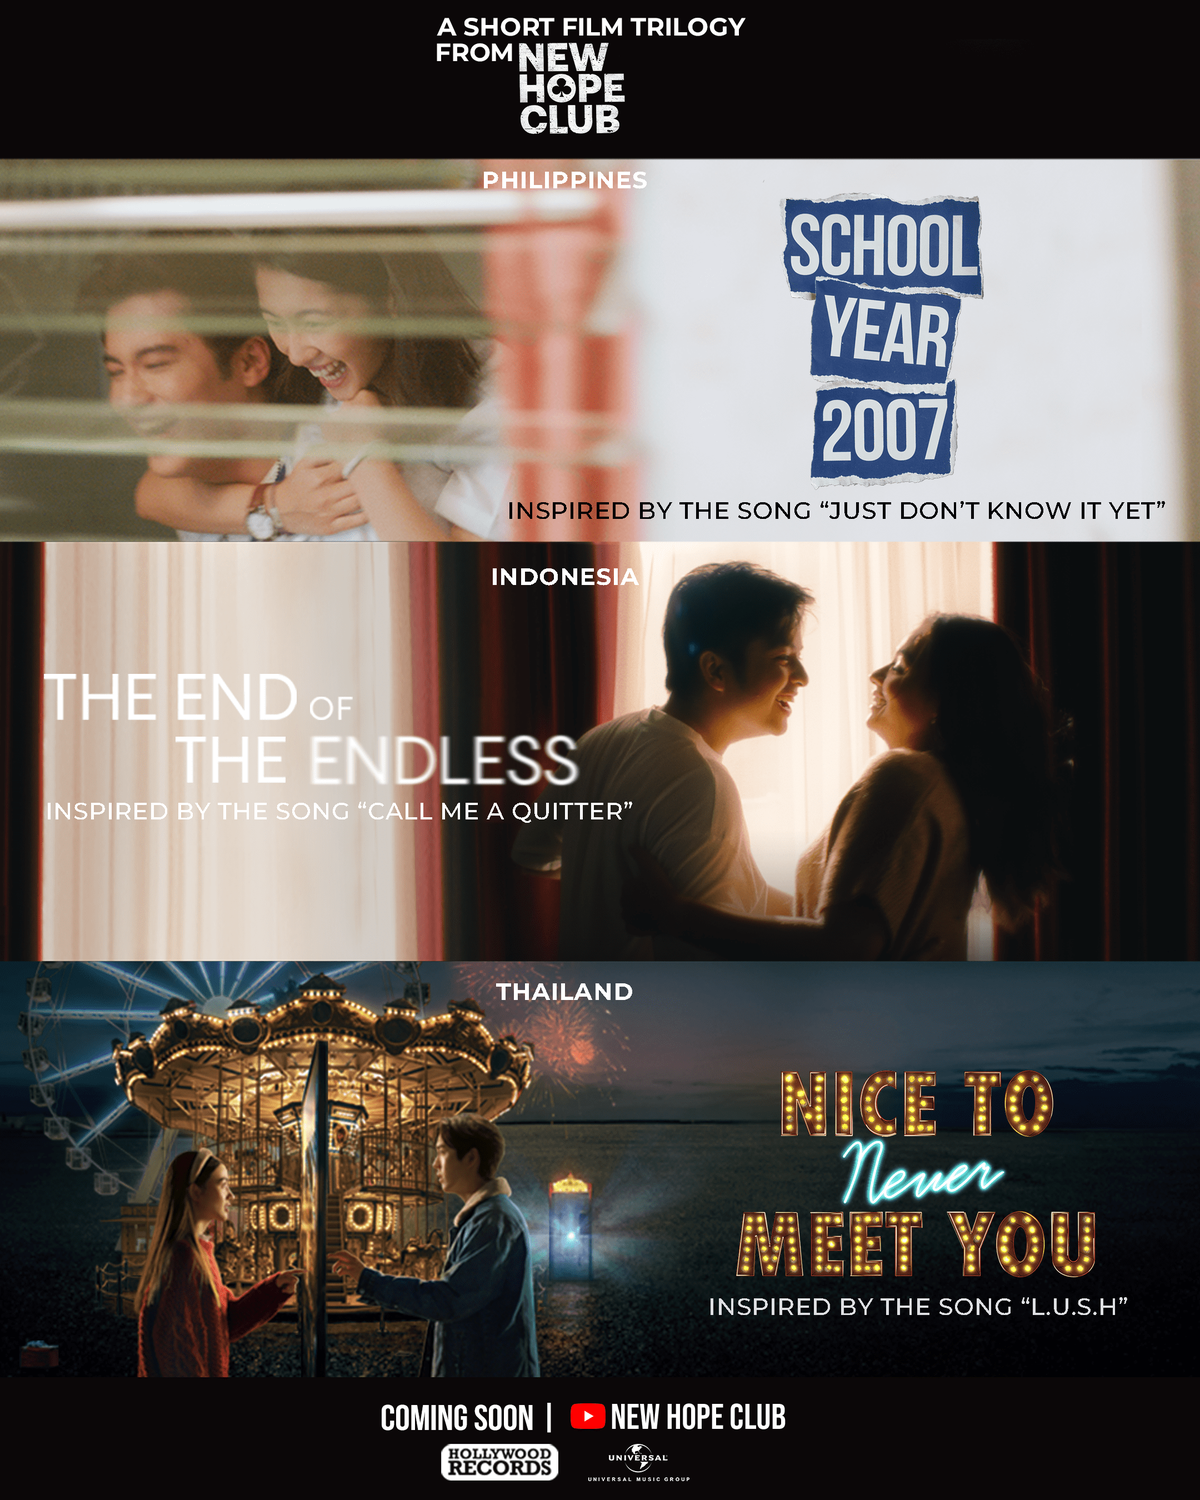 โปรเจ็กต์หนังสั้นสุดอบอุ่น 3 เรื่องจาก ไทย อินโดนีเซีย และฟิลิปปินส์ ที่ได้แรงบันดาลใจจาก 3 เพลงรักของ 3 หนุ่ม New Hope